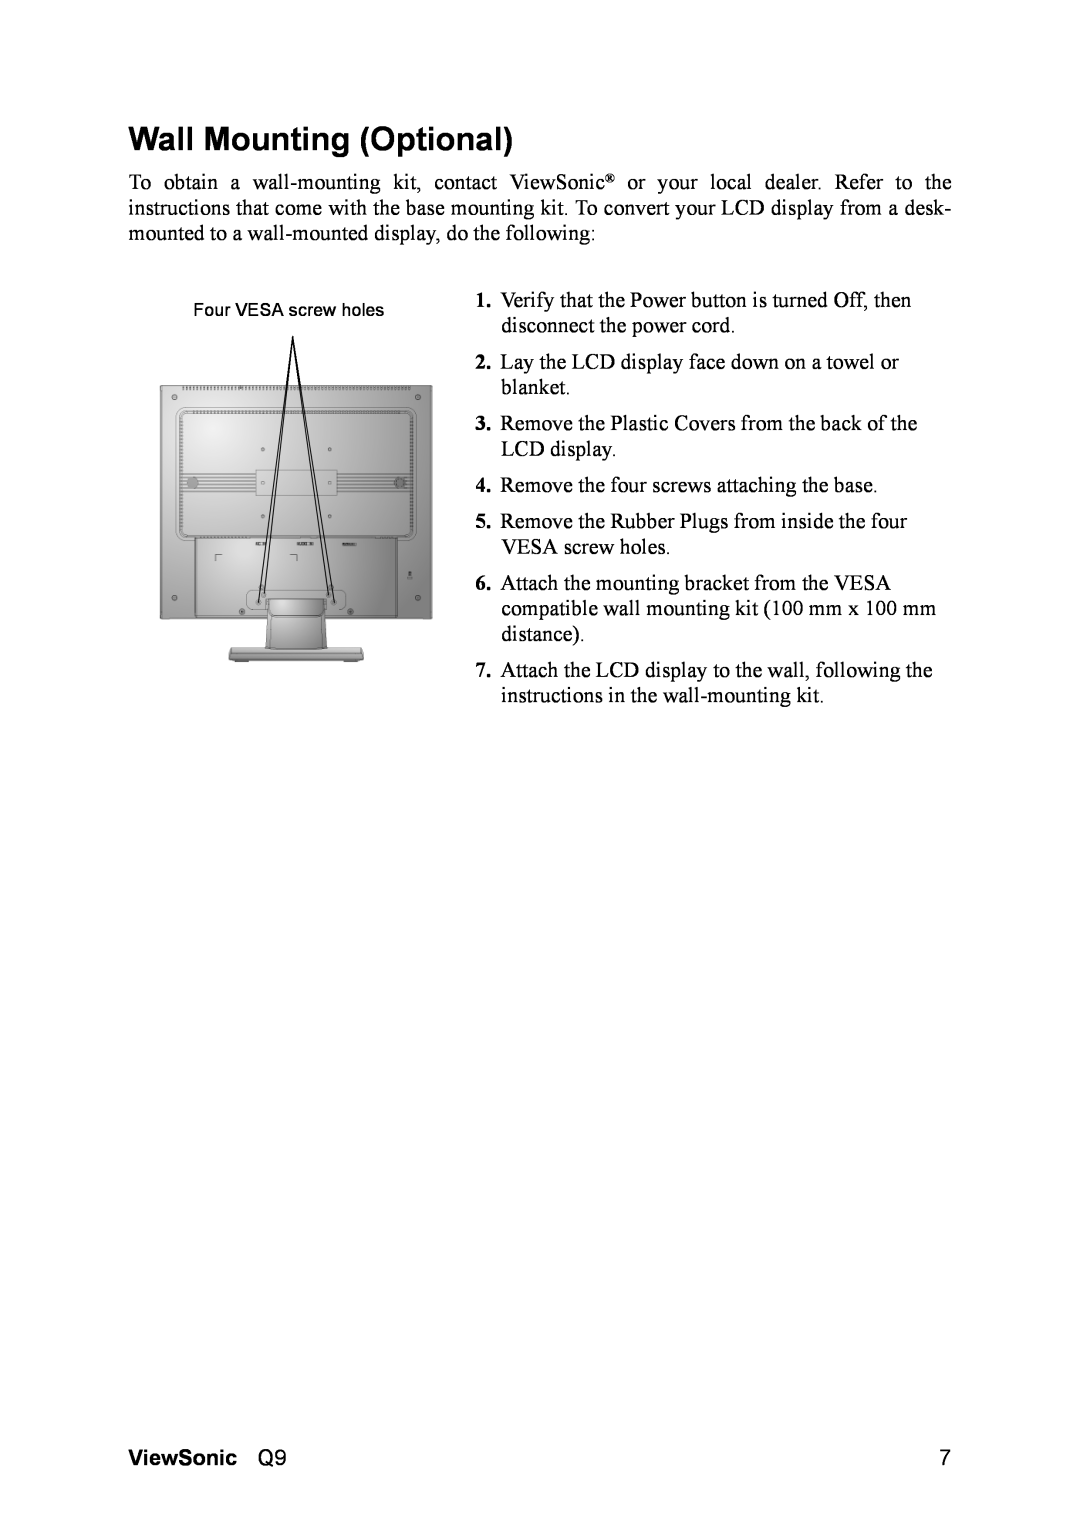 ViewSonic Q9B manual Wall Mounting Optional, ViewSonic Q9 